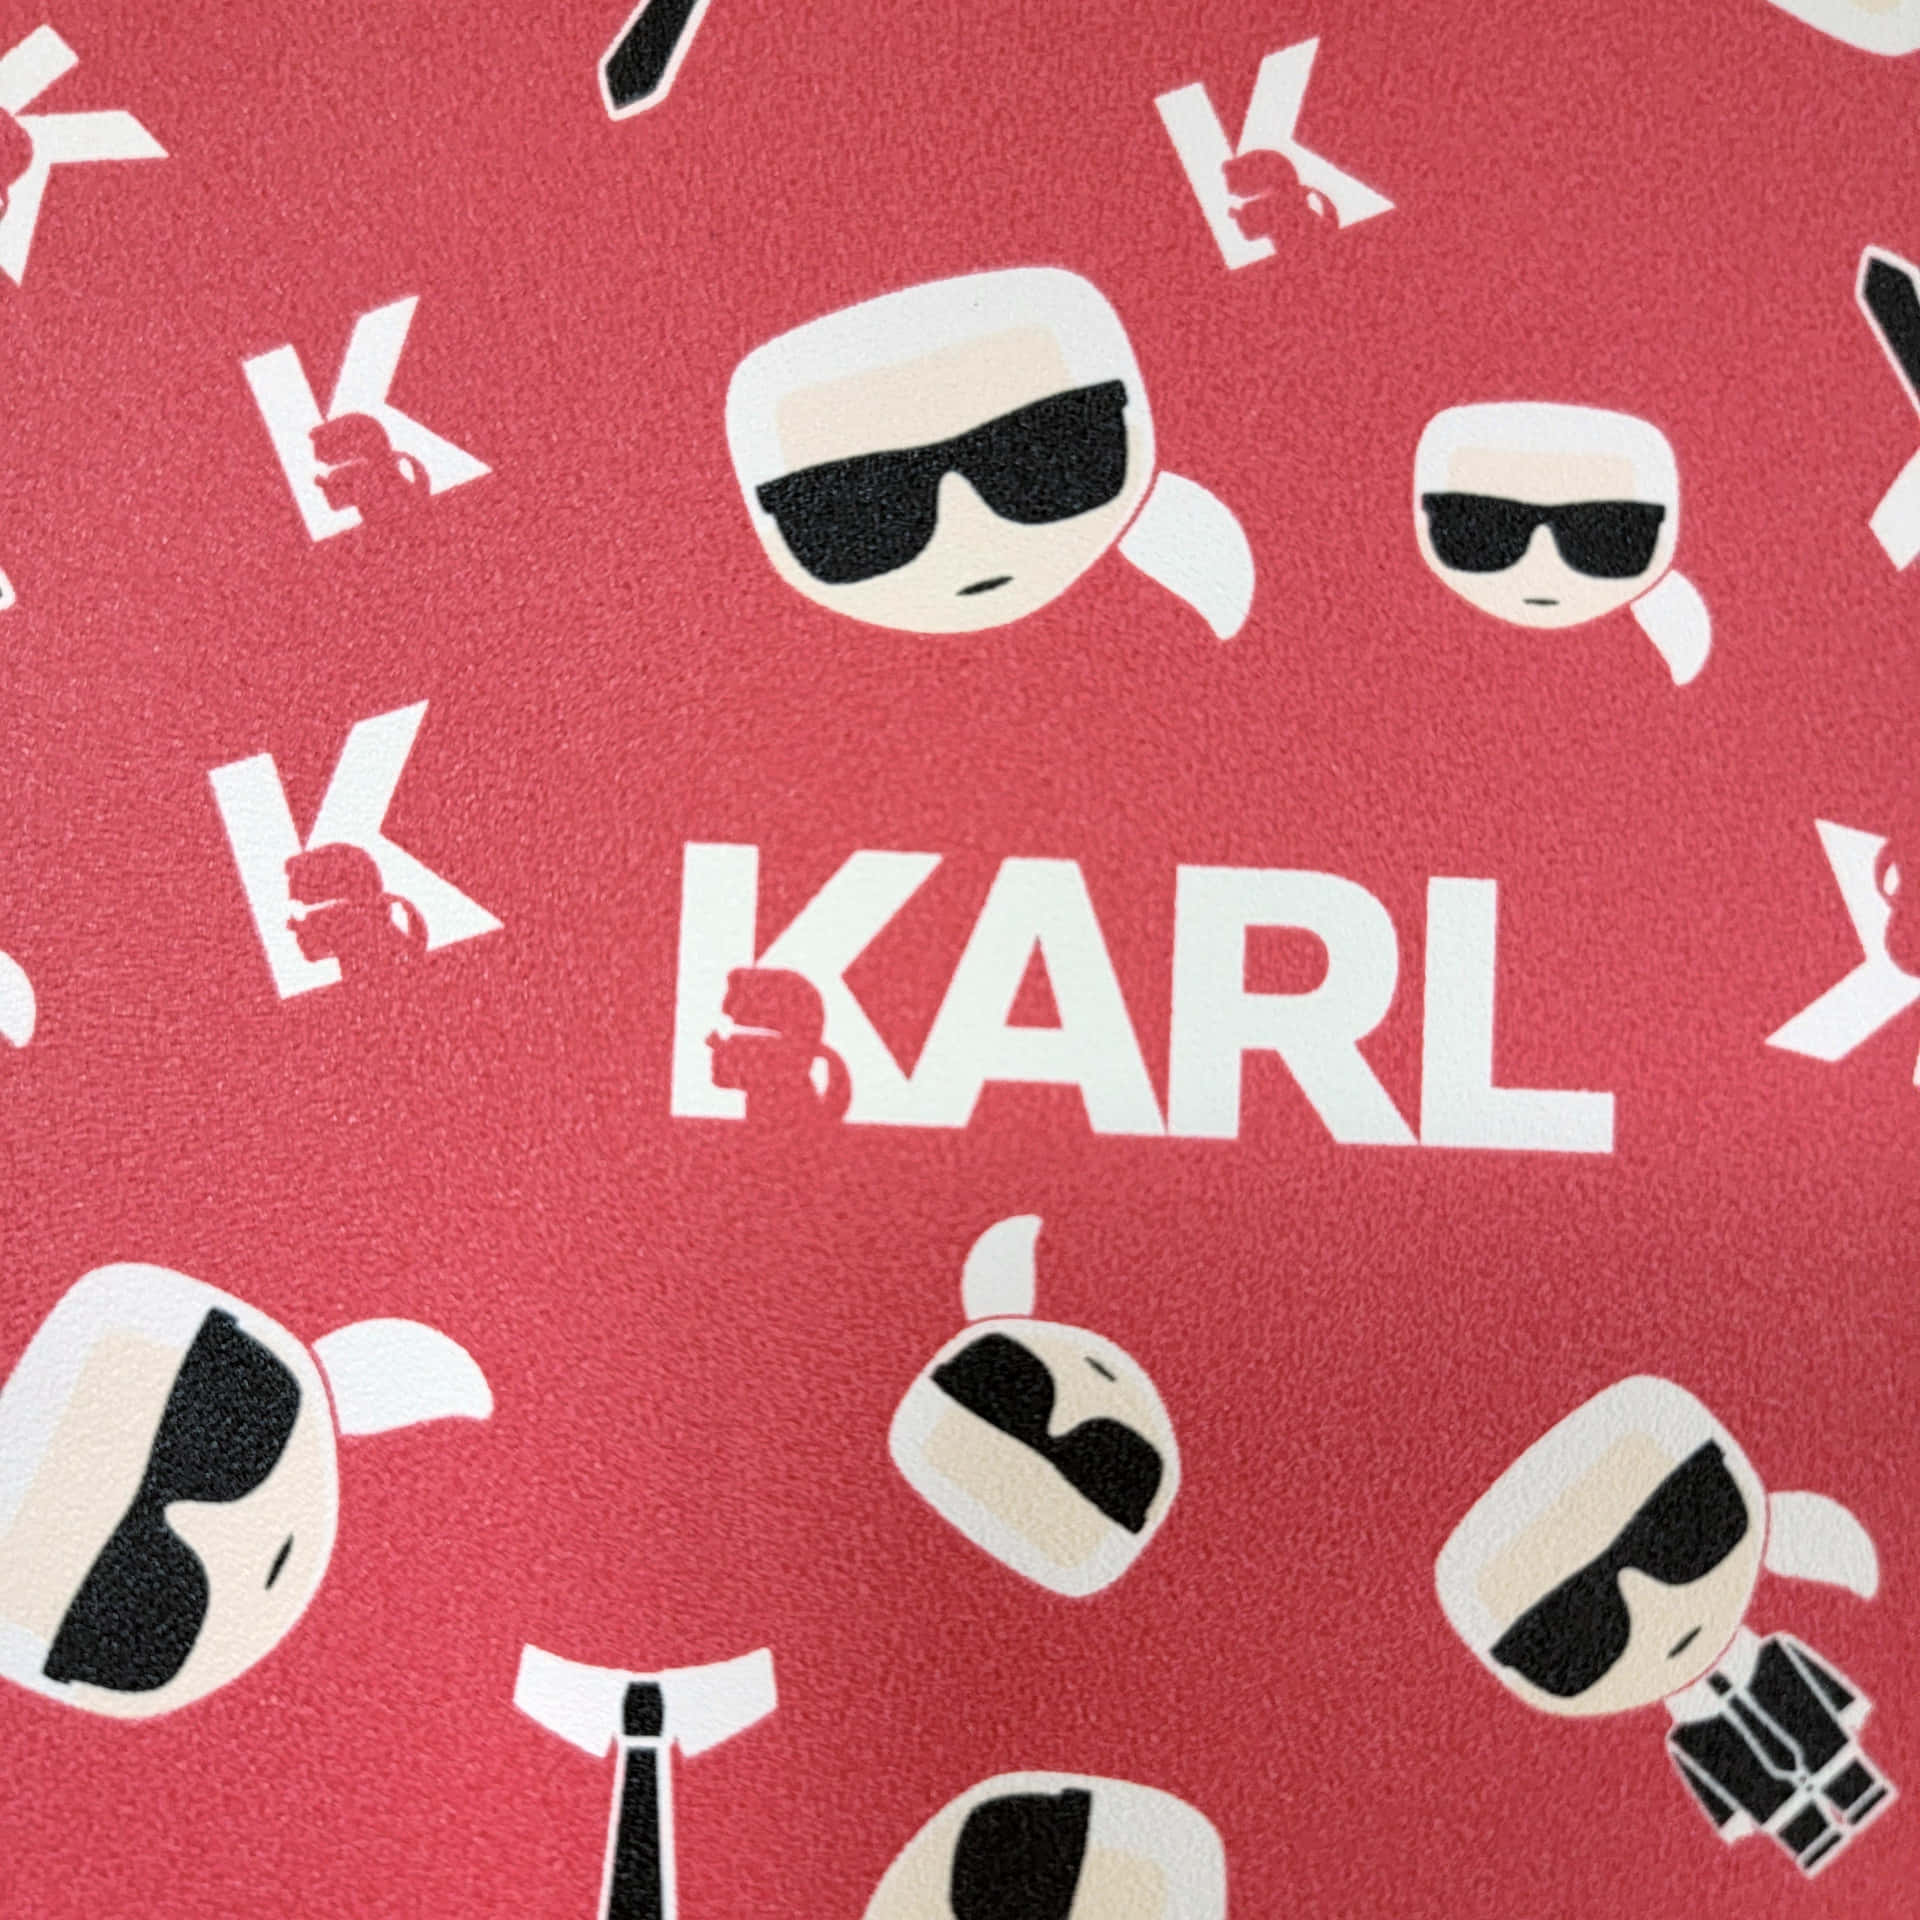 Karlkarl Karl Karl Karl Karl Karl Karl Karl Karl Karl Wallpaper